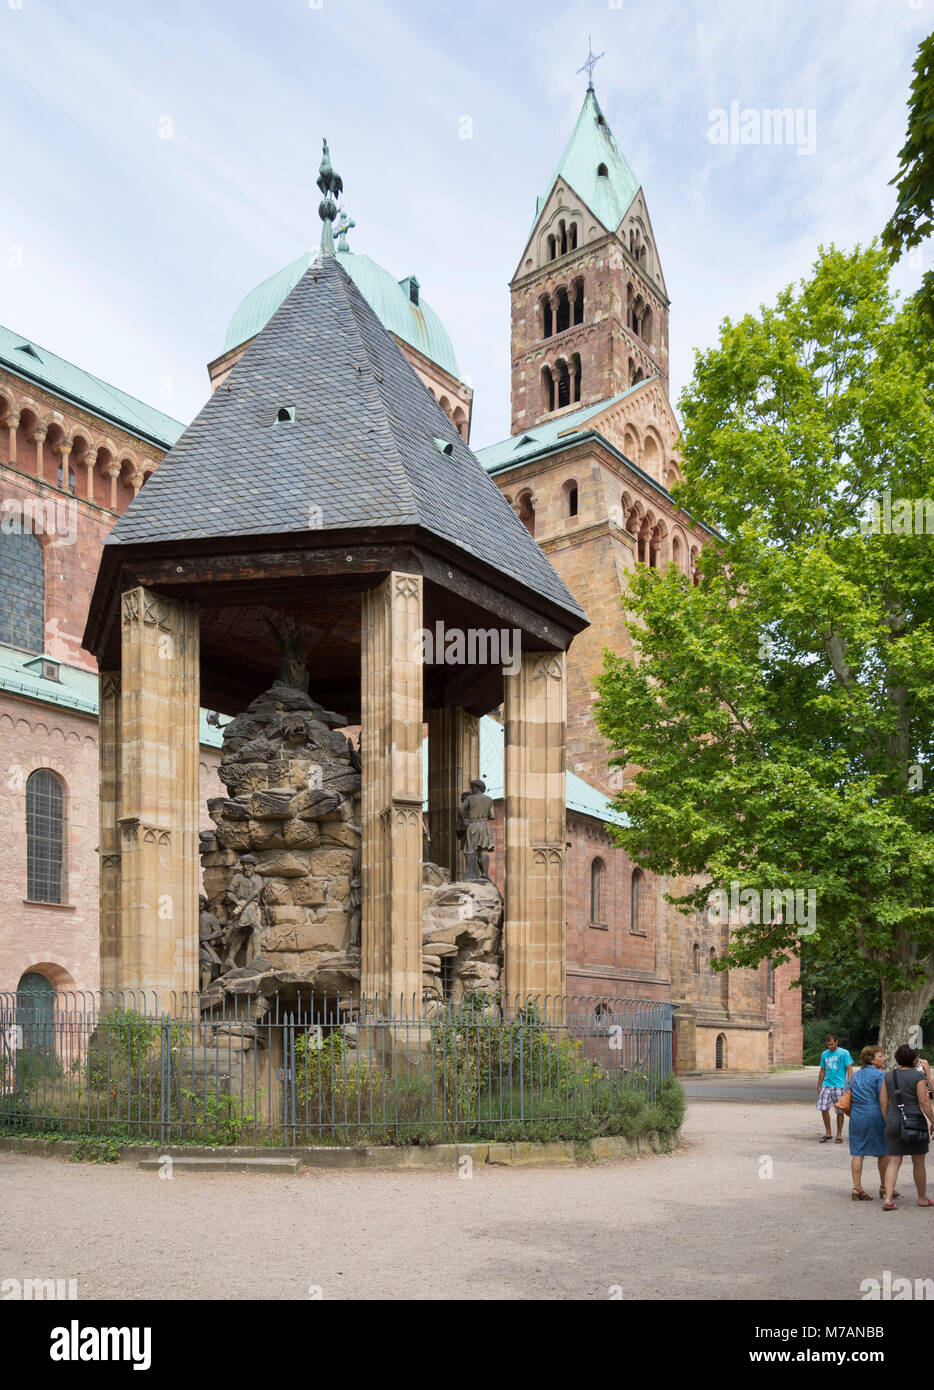 La Cattedrale di Speyer, la più grande chiesa romanica dell'Europa. UNESCO - Sito Patrimonio dell'umanità. Il Domgarten meridionale con il monte degli Ulivi, anticamente il centro del chiostro del Duomo, gruppo di figure di pietra creato da Gottfried Renn (Scultore di Speyrer), Foto Stock